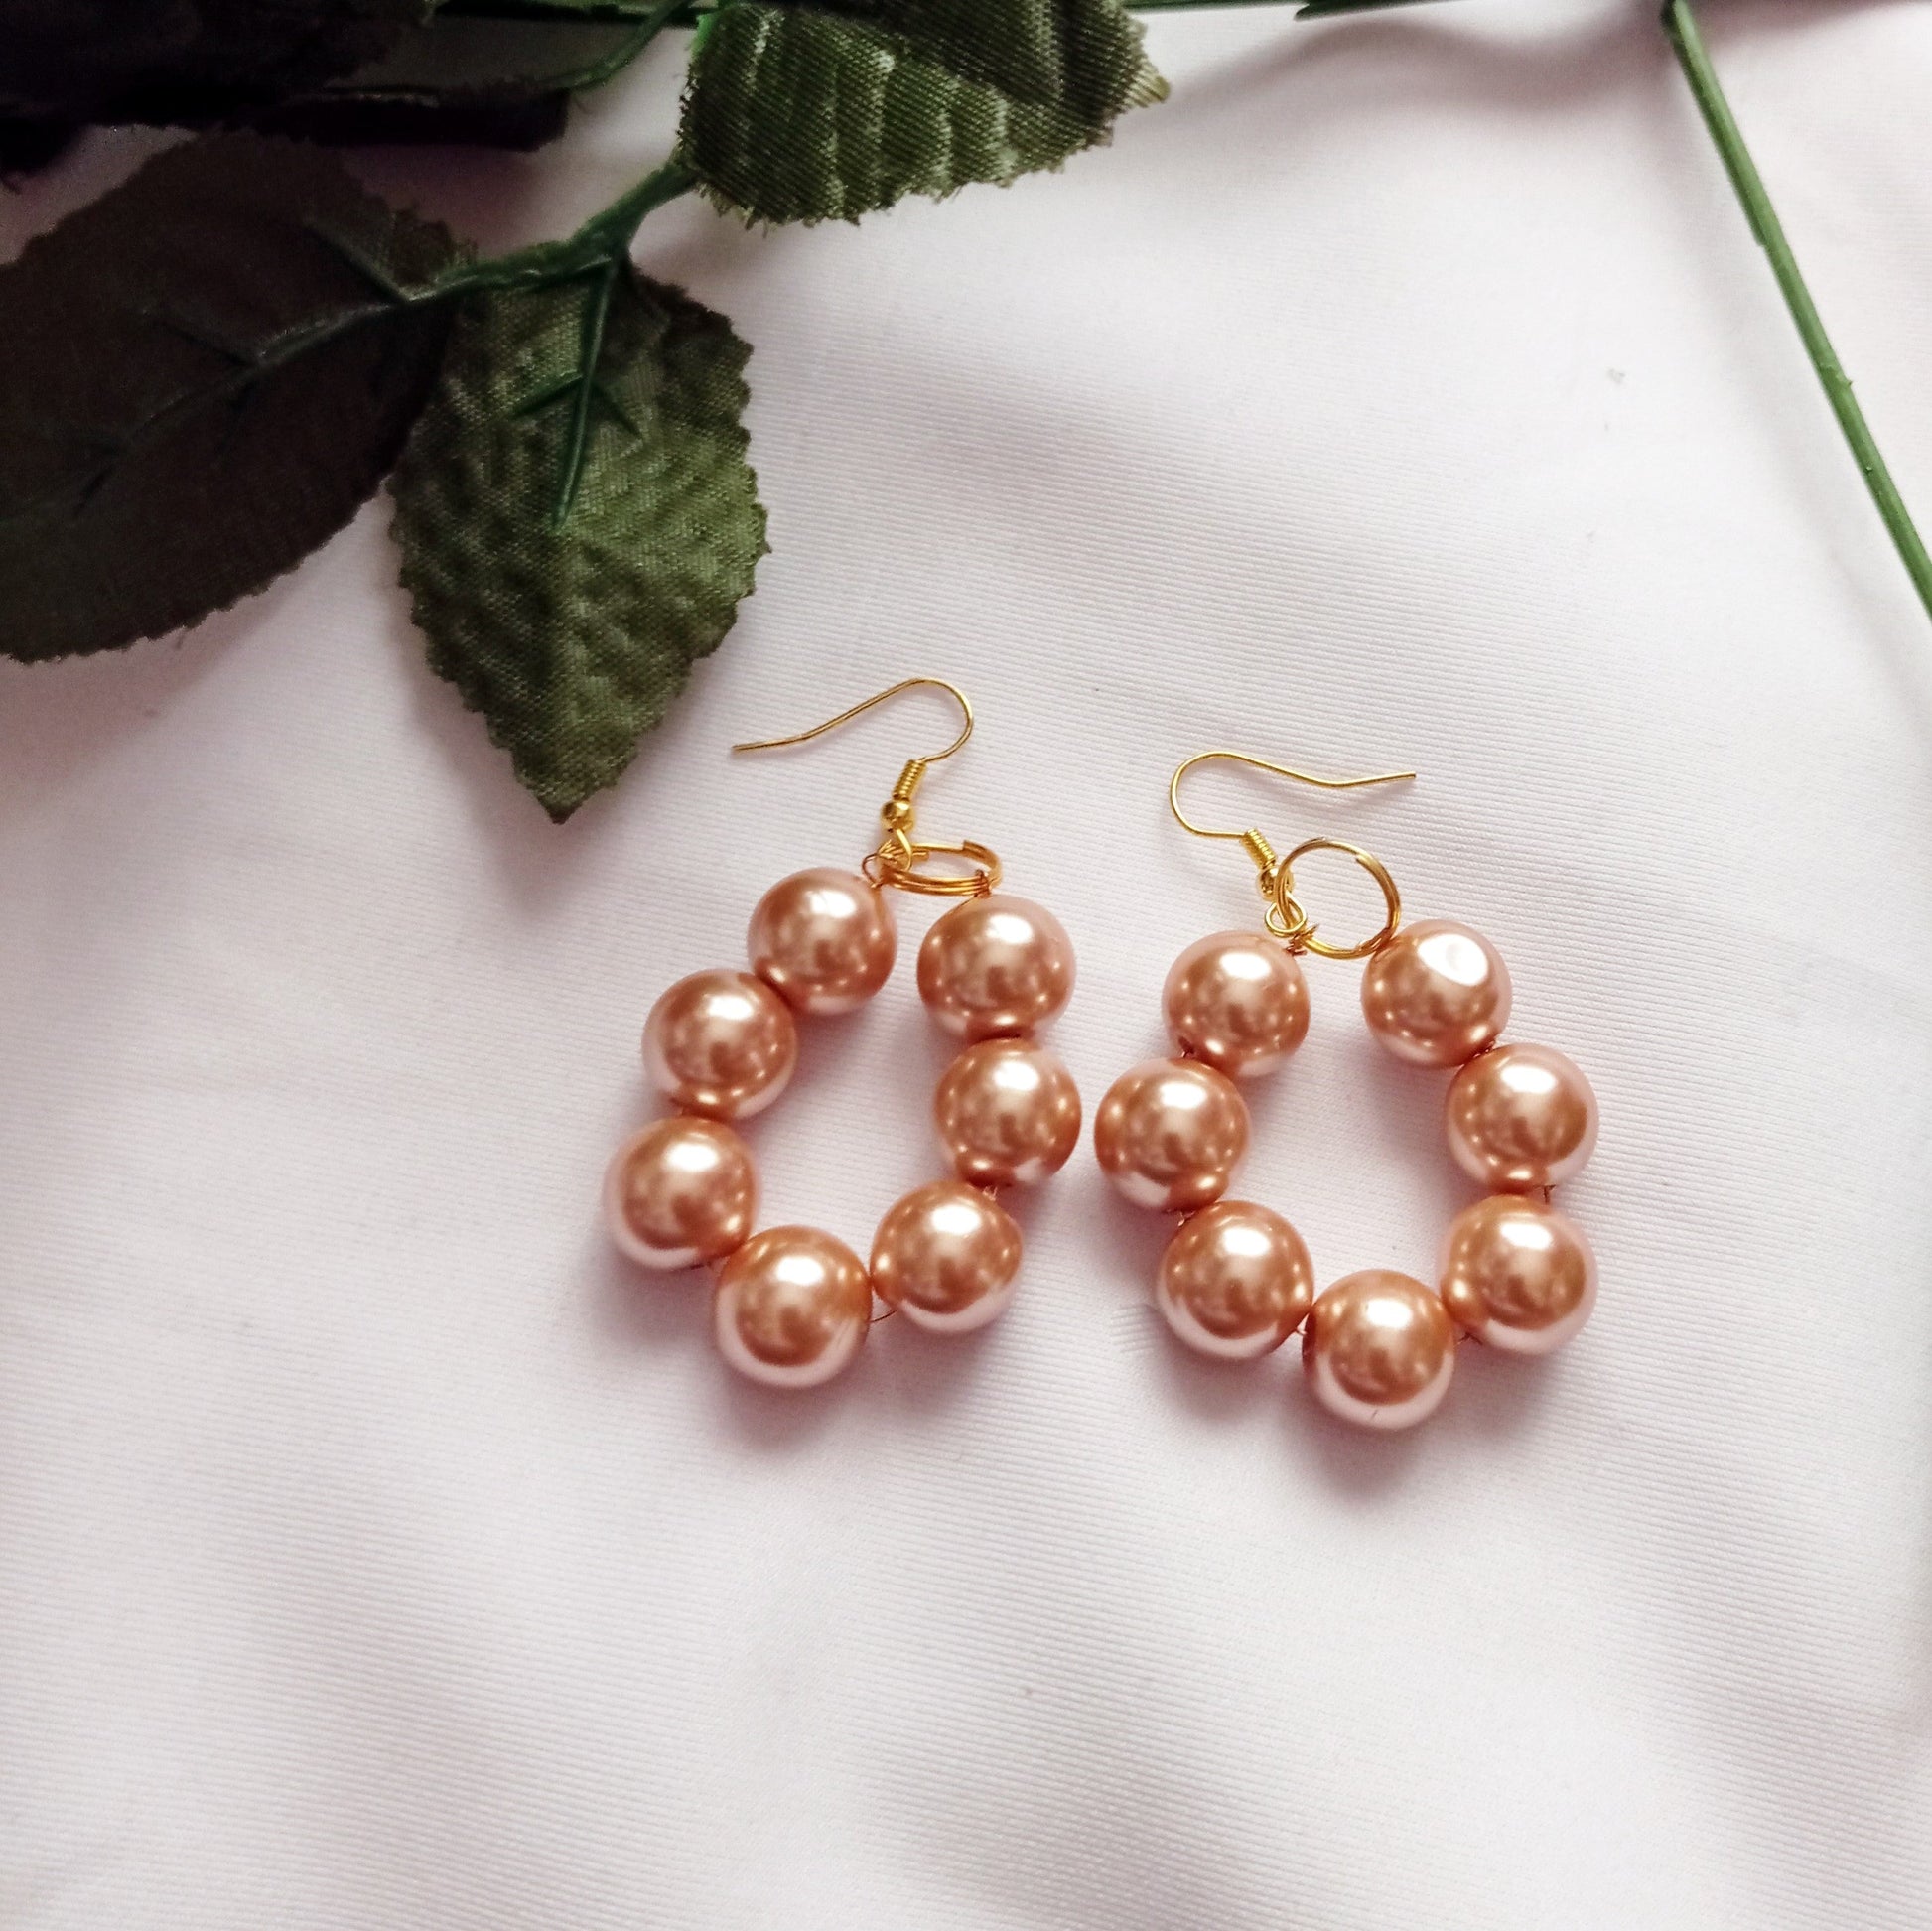 Bronze Glass Pearl Earrings, Glass Pearl Jewelry, Unique Earrings | by lovedbynlanla-6